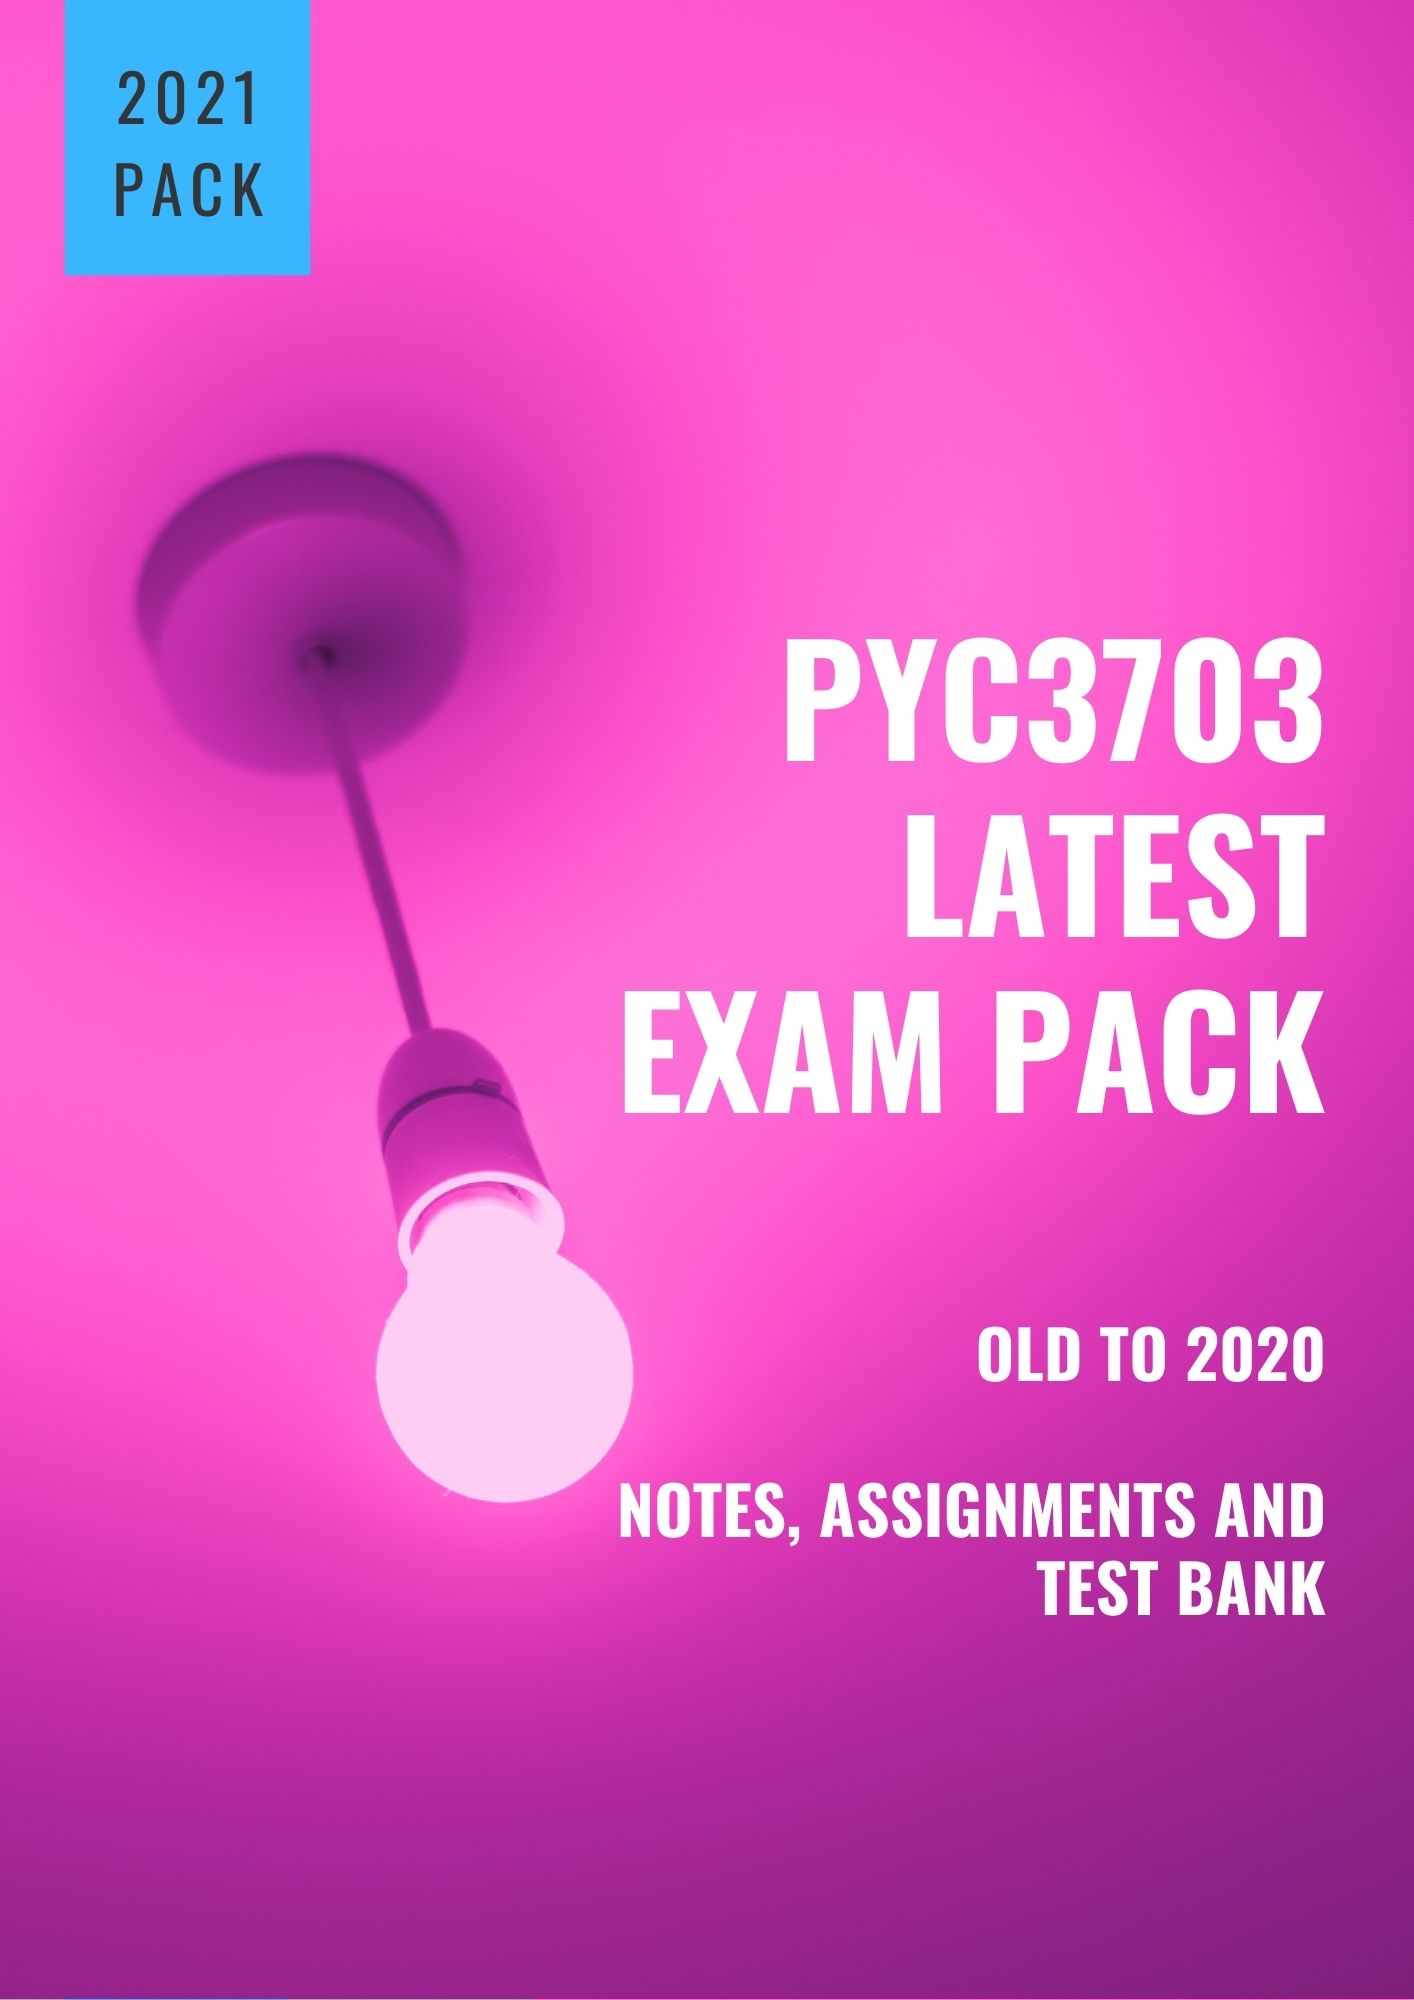 PYC3703 Exam Pack for 2021 www.studypass.co.za